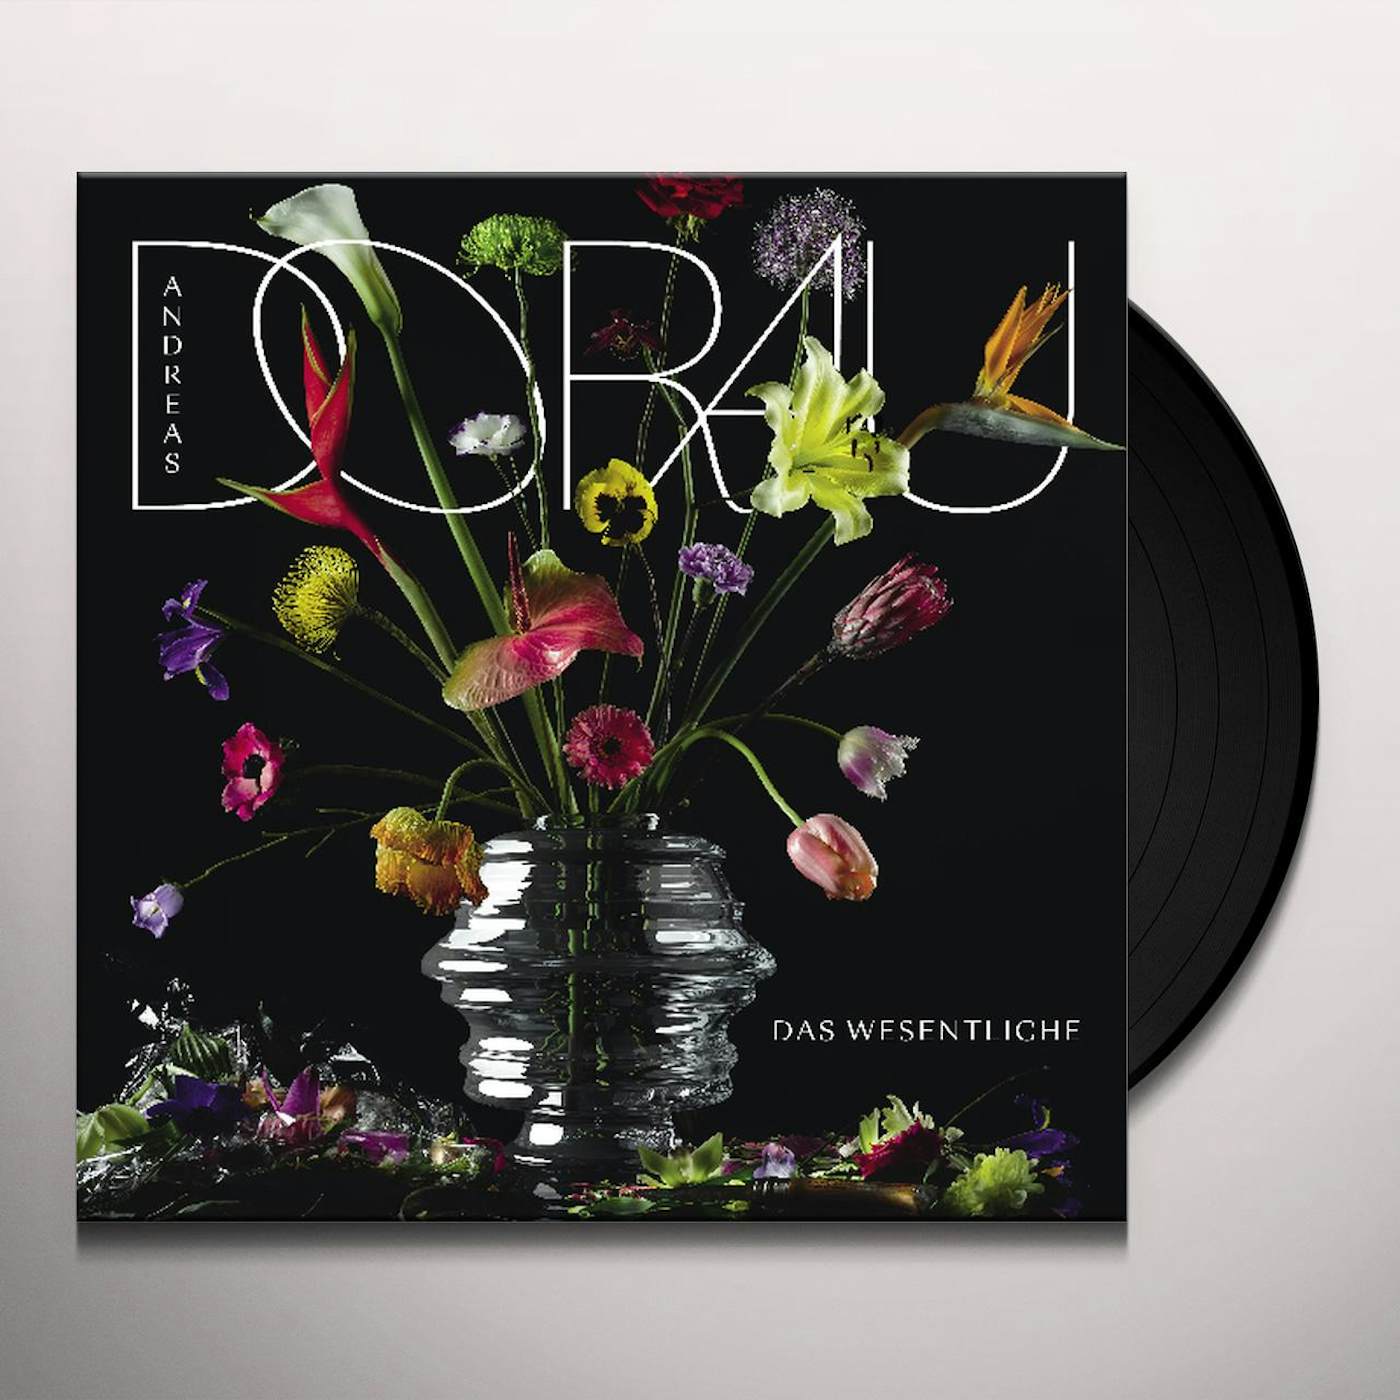 Andreas Dorau Das Vinyl Record